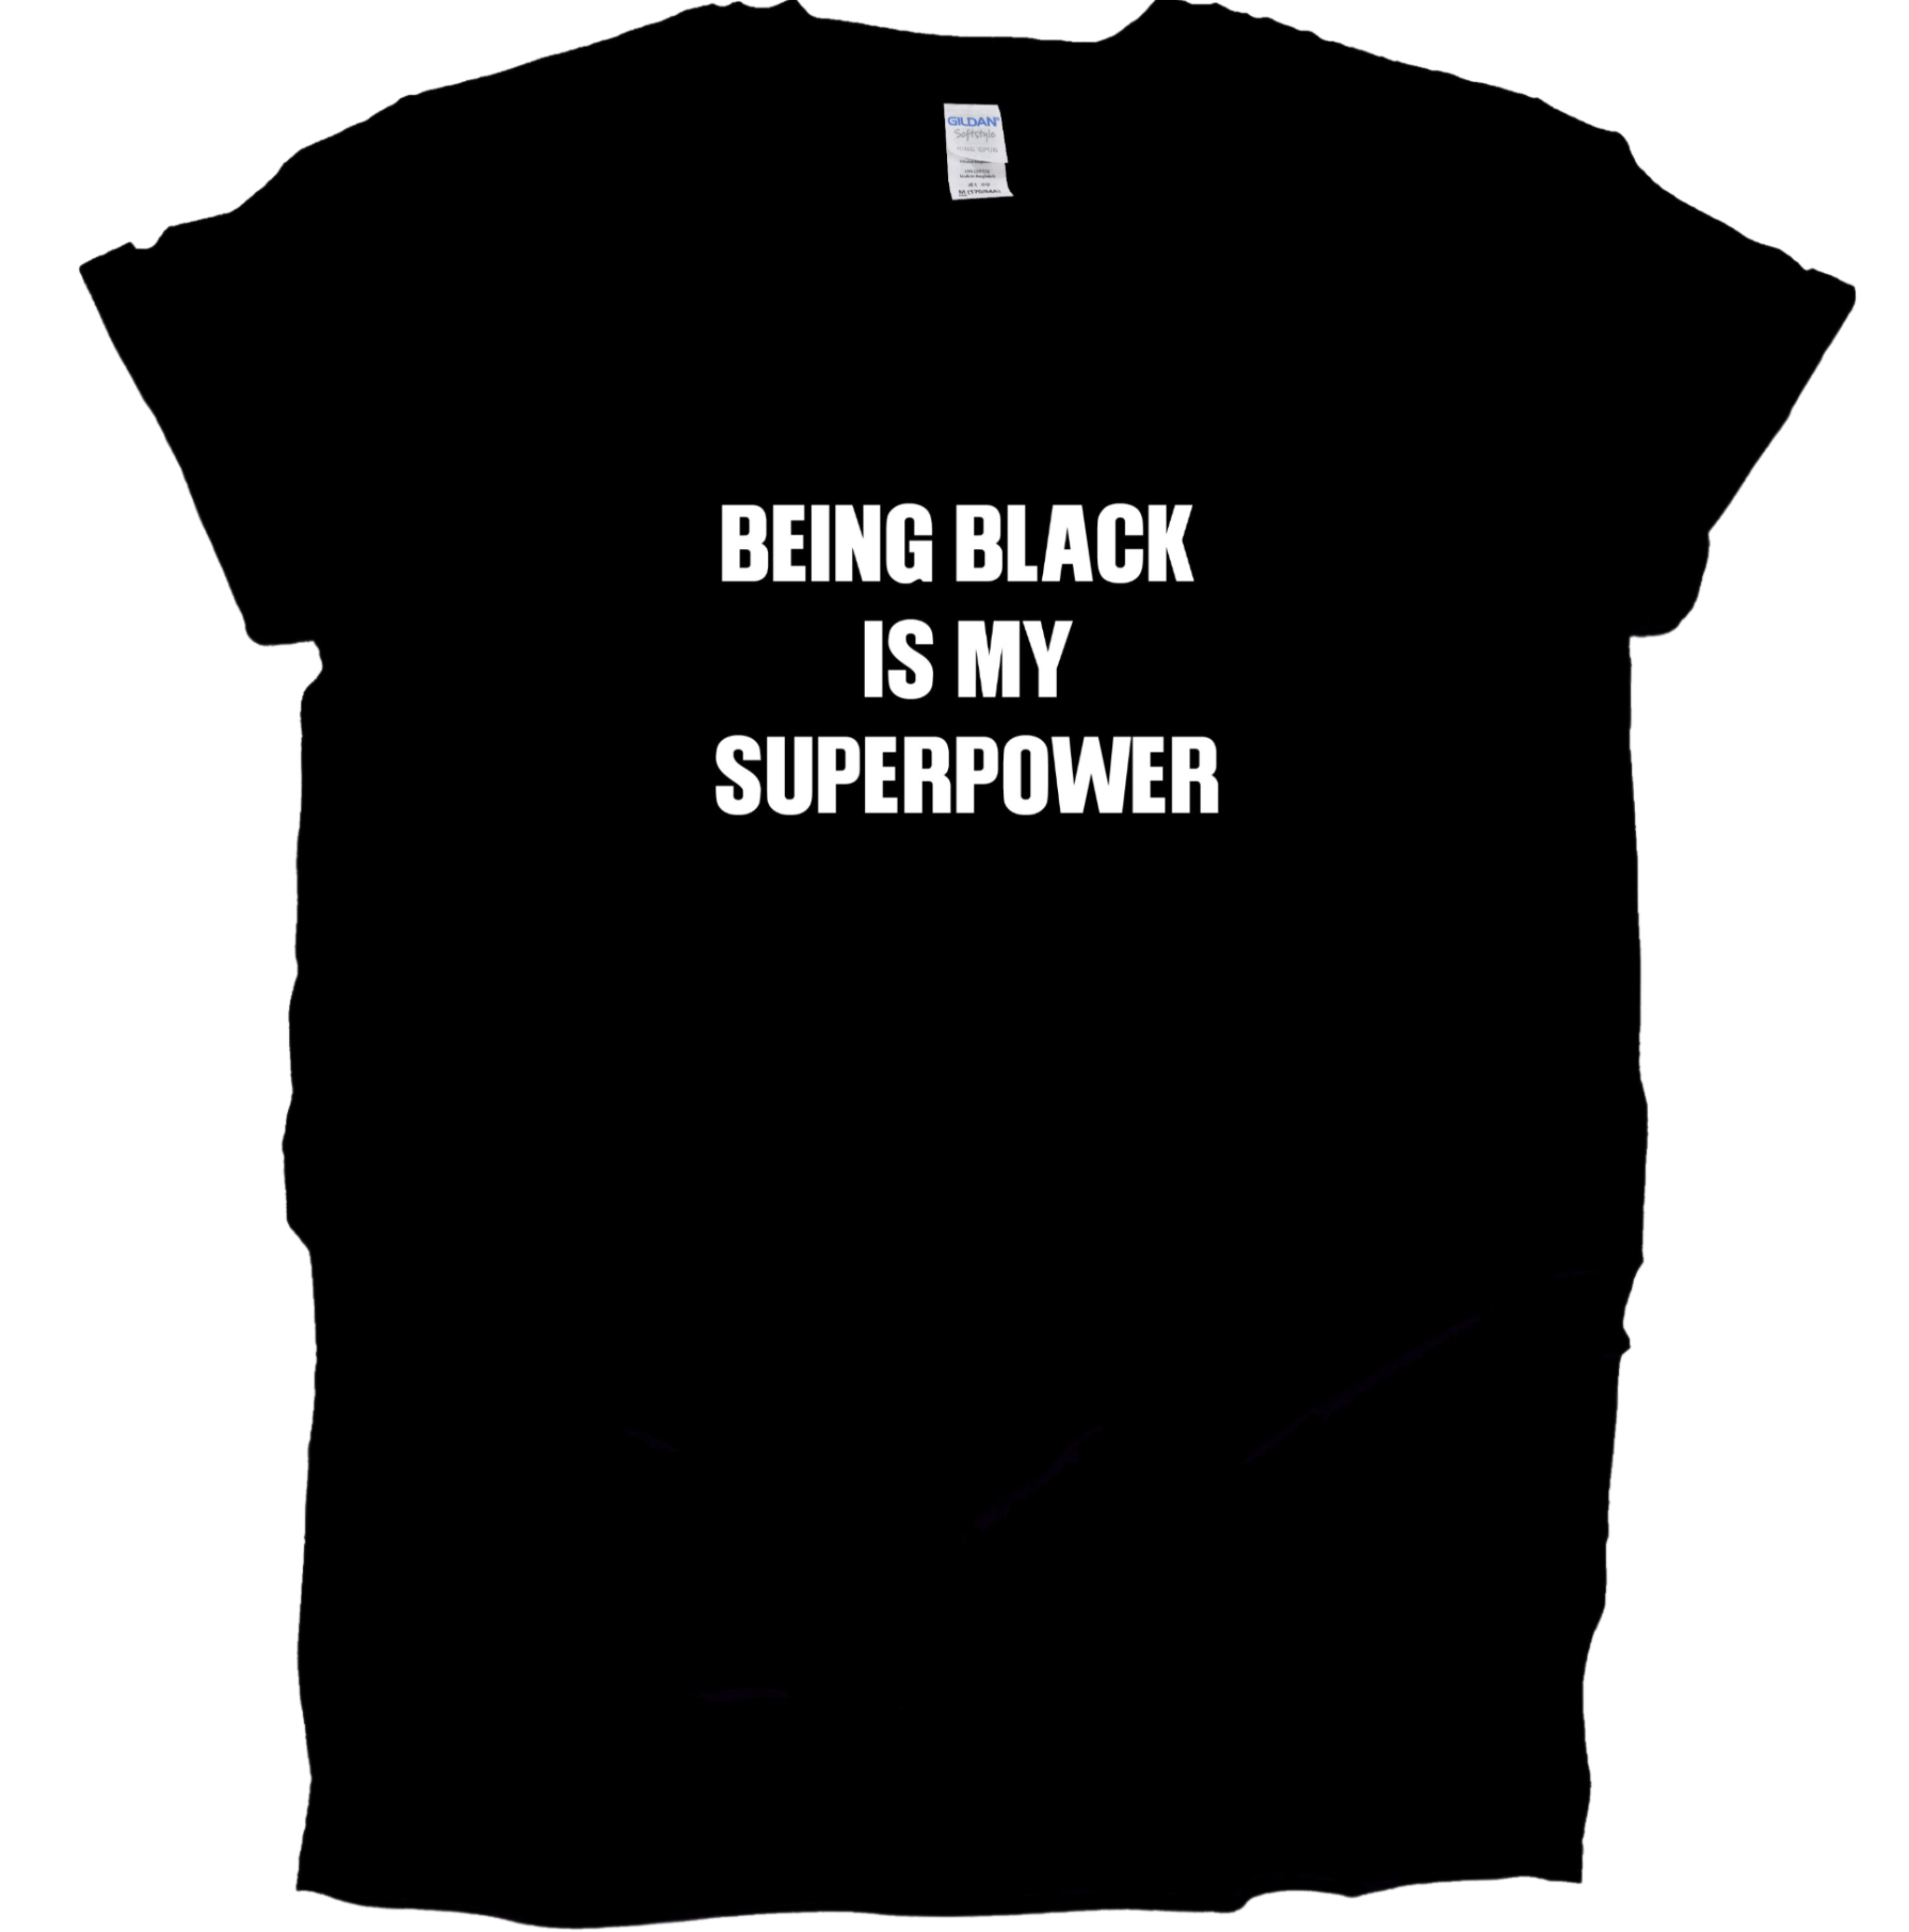 Being Black Is My Superpower